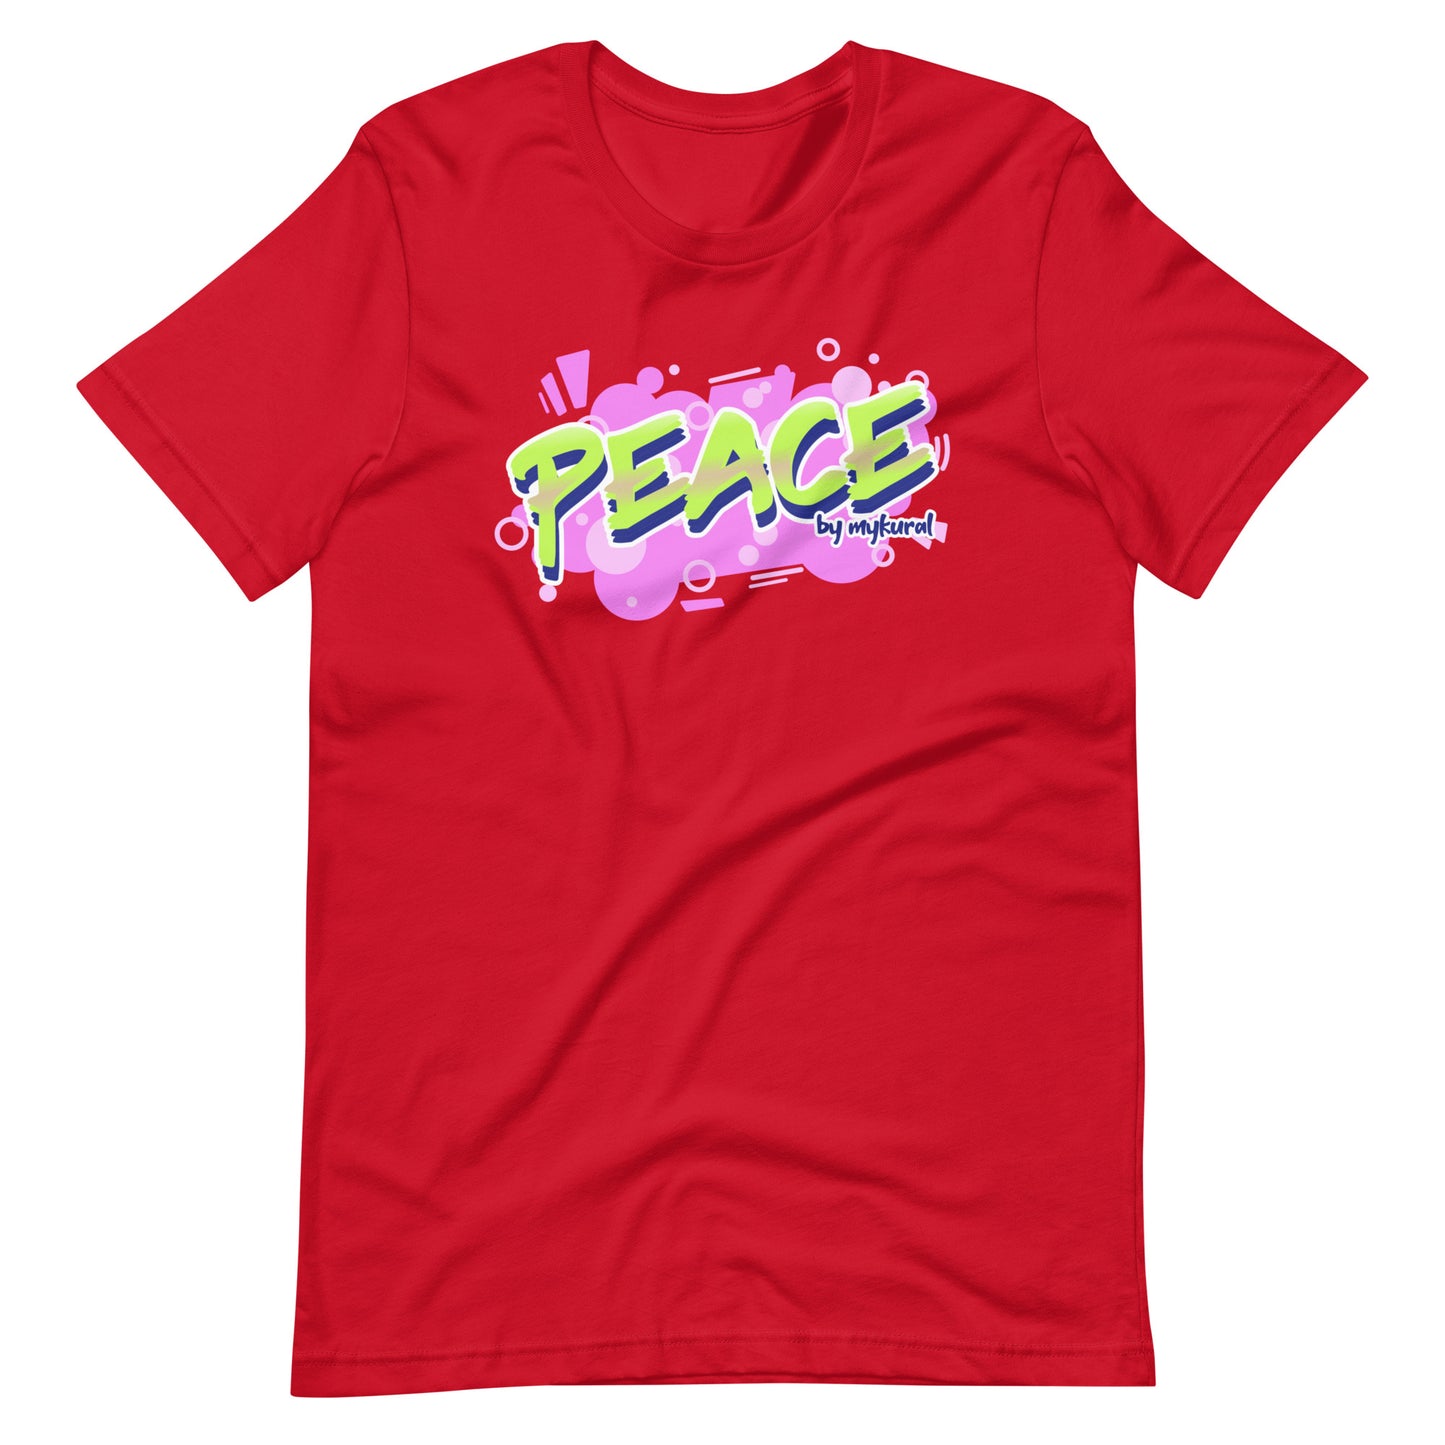 Unisex t-shirt "Peace"